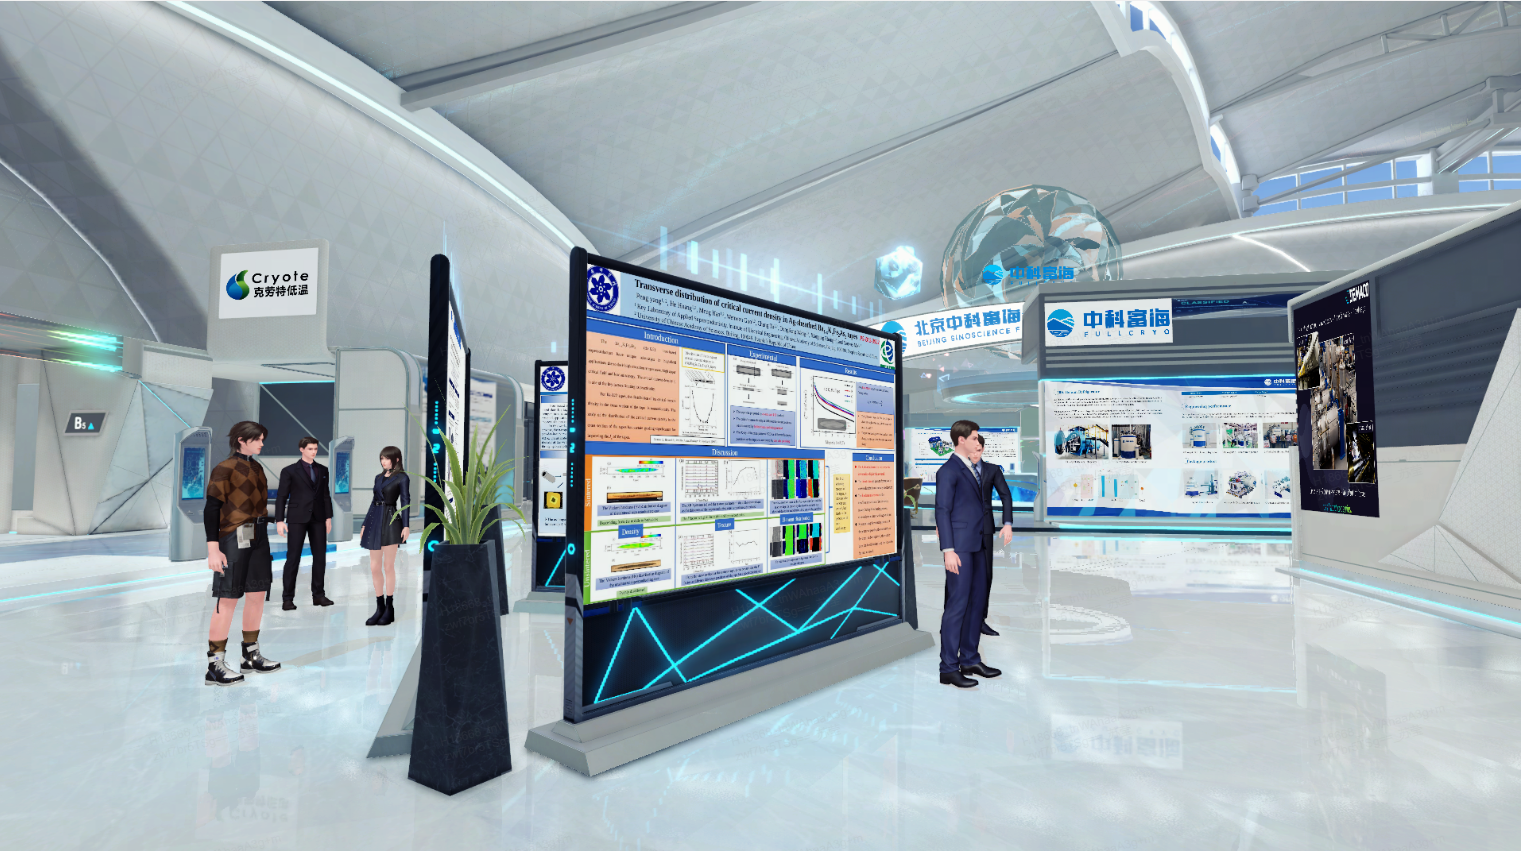 这是一个现代化的展览厅内部，有几个人在浏览展板，环境设计科技感强，装饰以蓝色光线为特色。